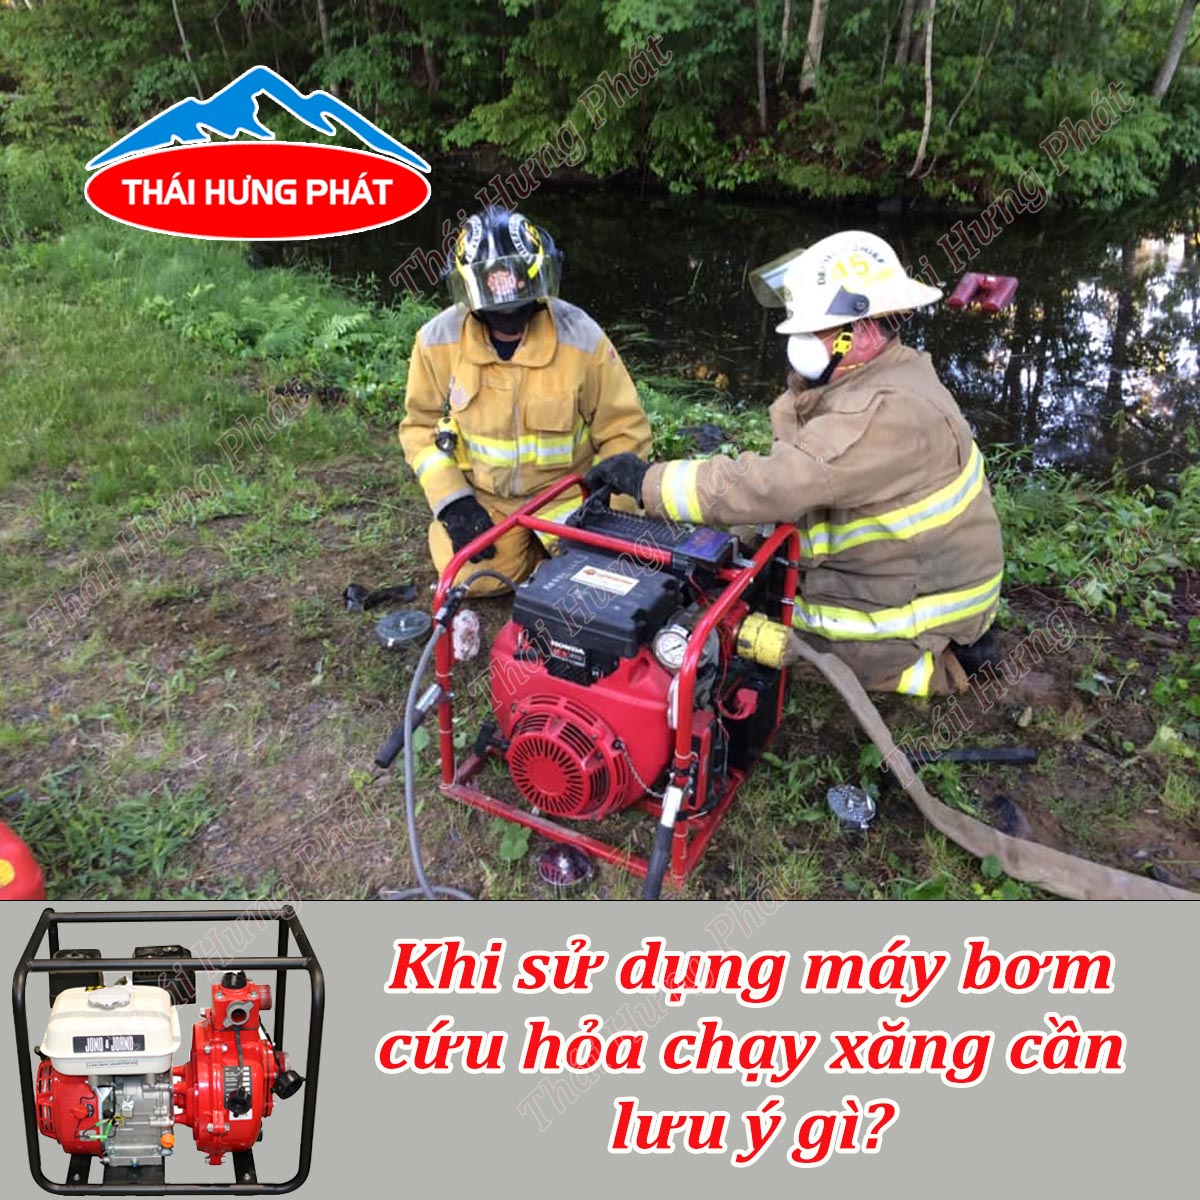 Khi sử dụng máy bơm cứu hỏa chạy xăng cần lưu ý gì?